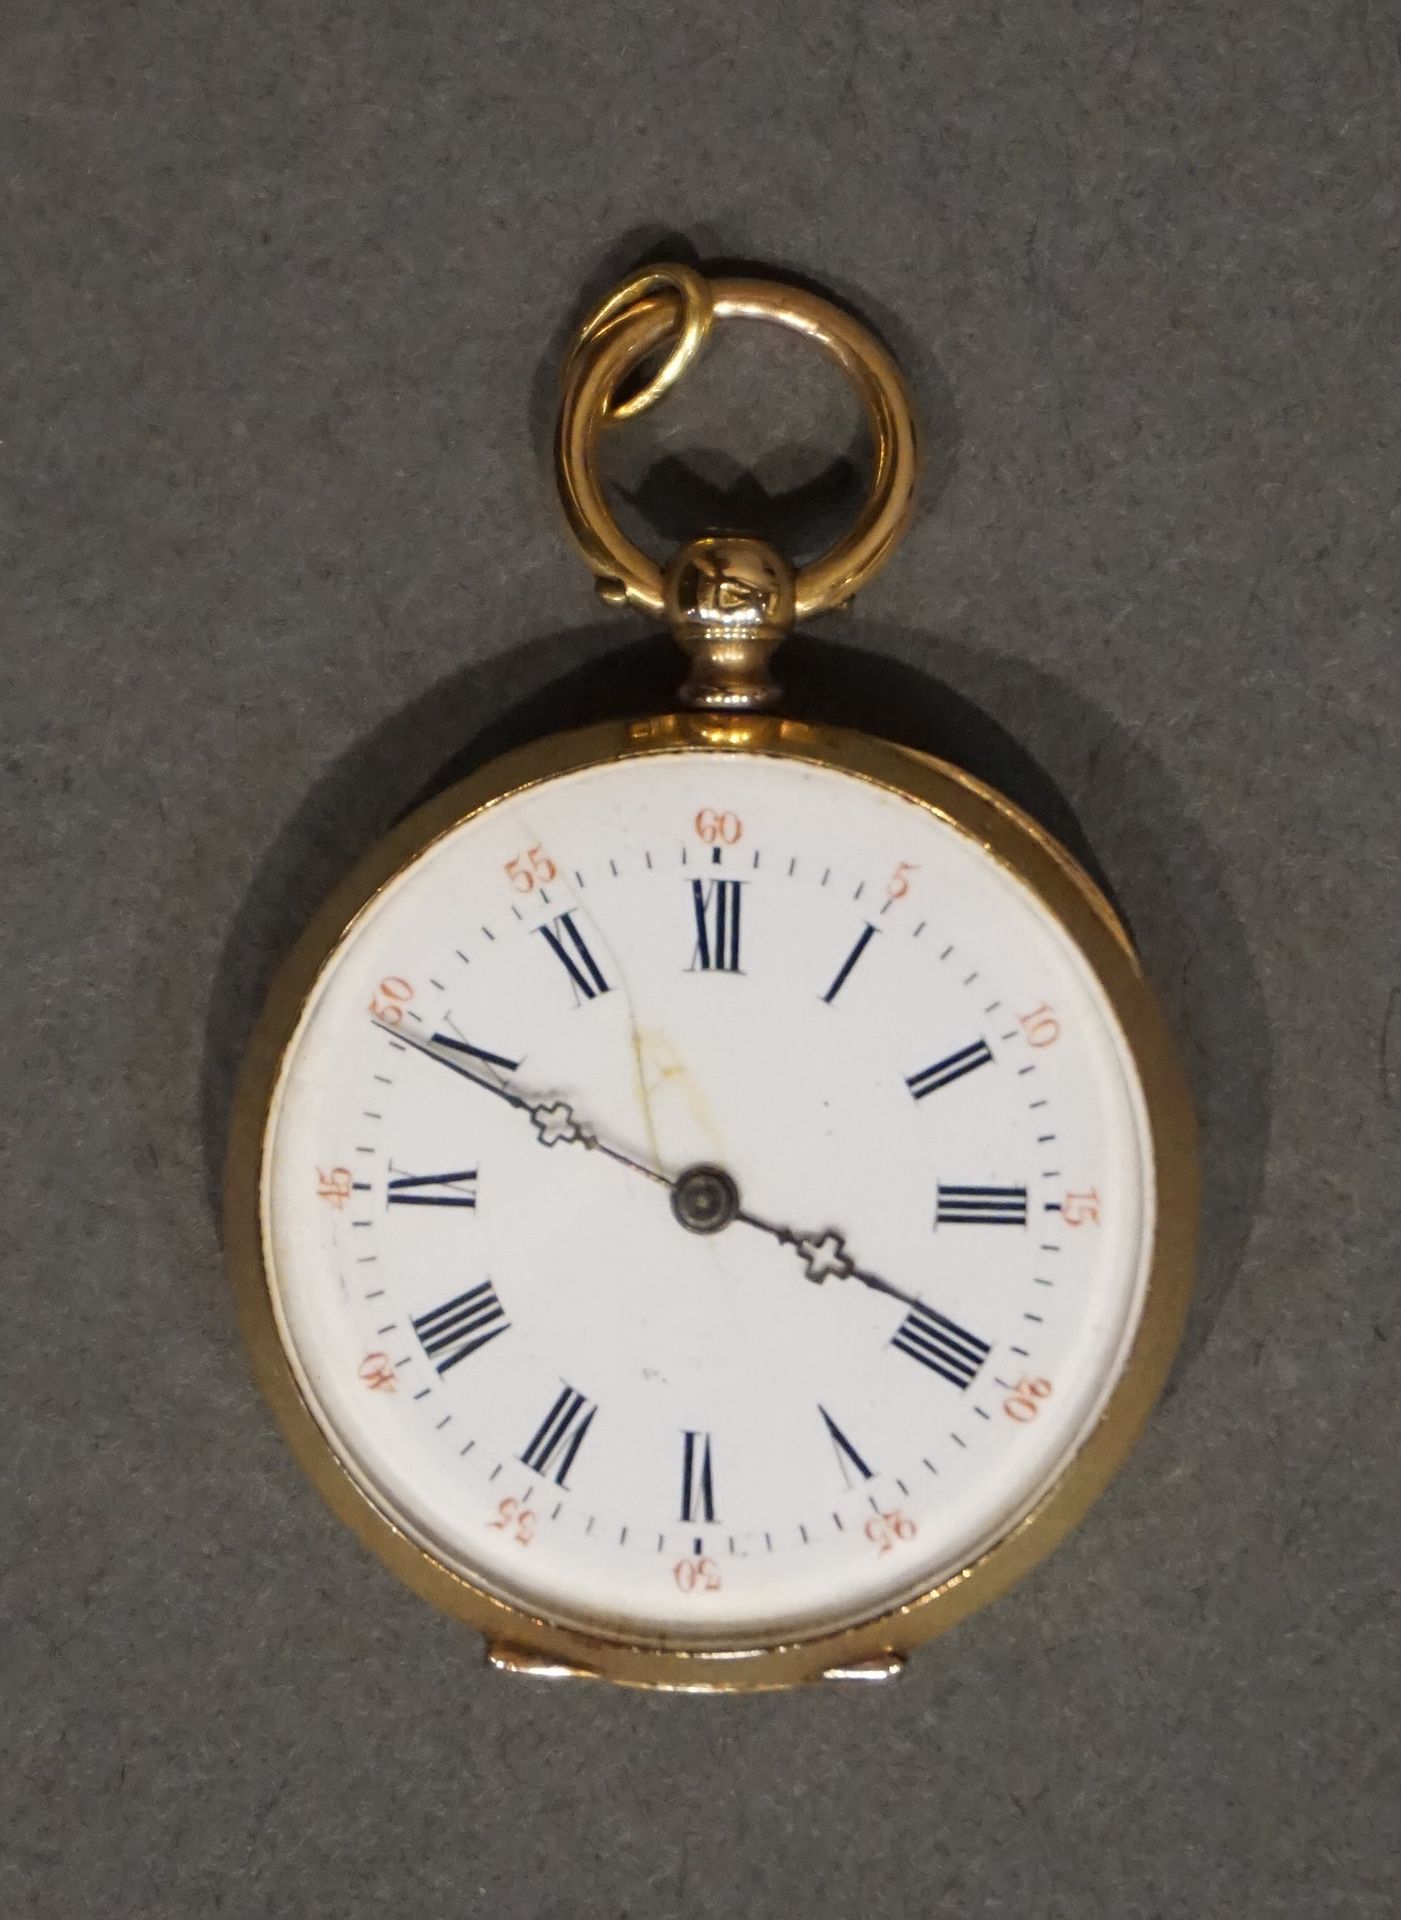 MONTRE DE COL Reloj con cuello guilloché de oro (Peso bruto: 25g)